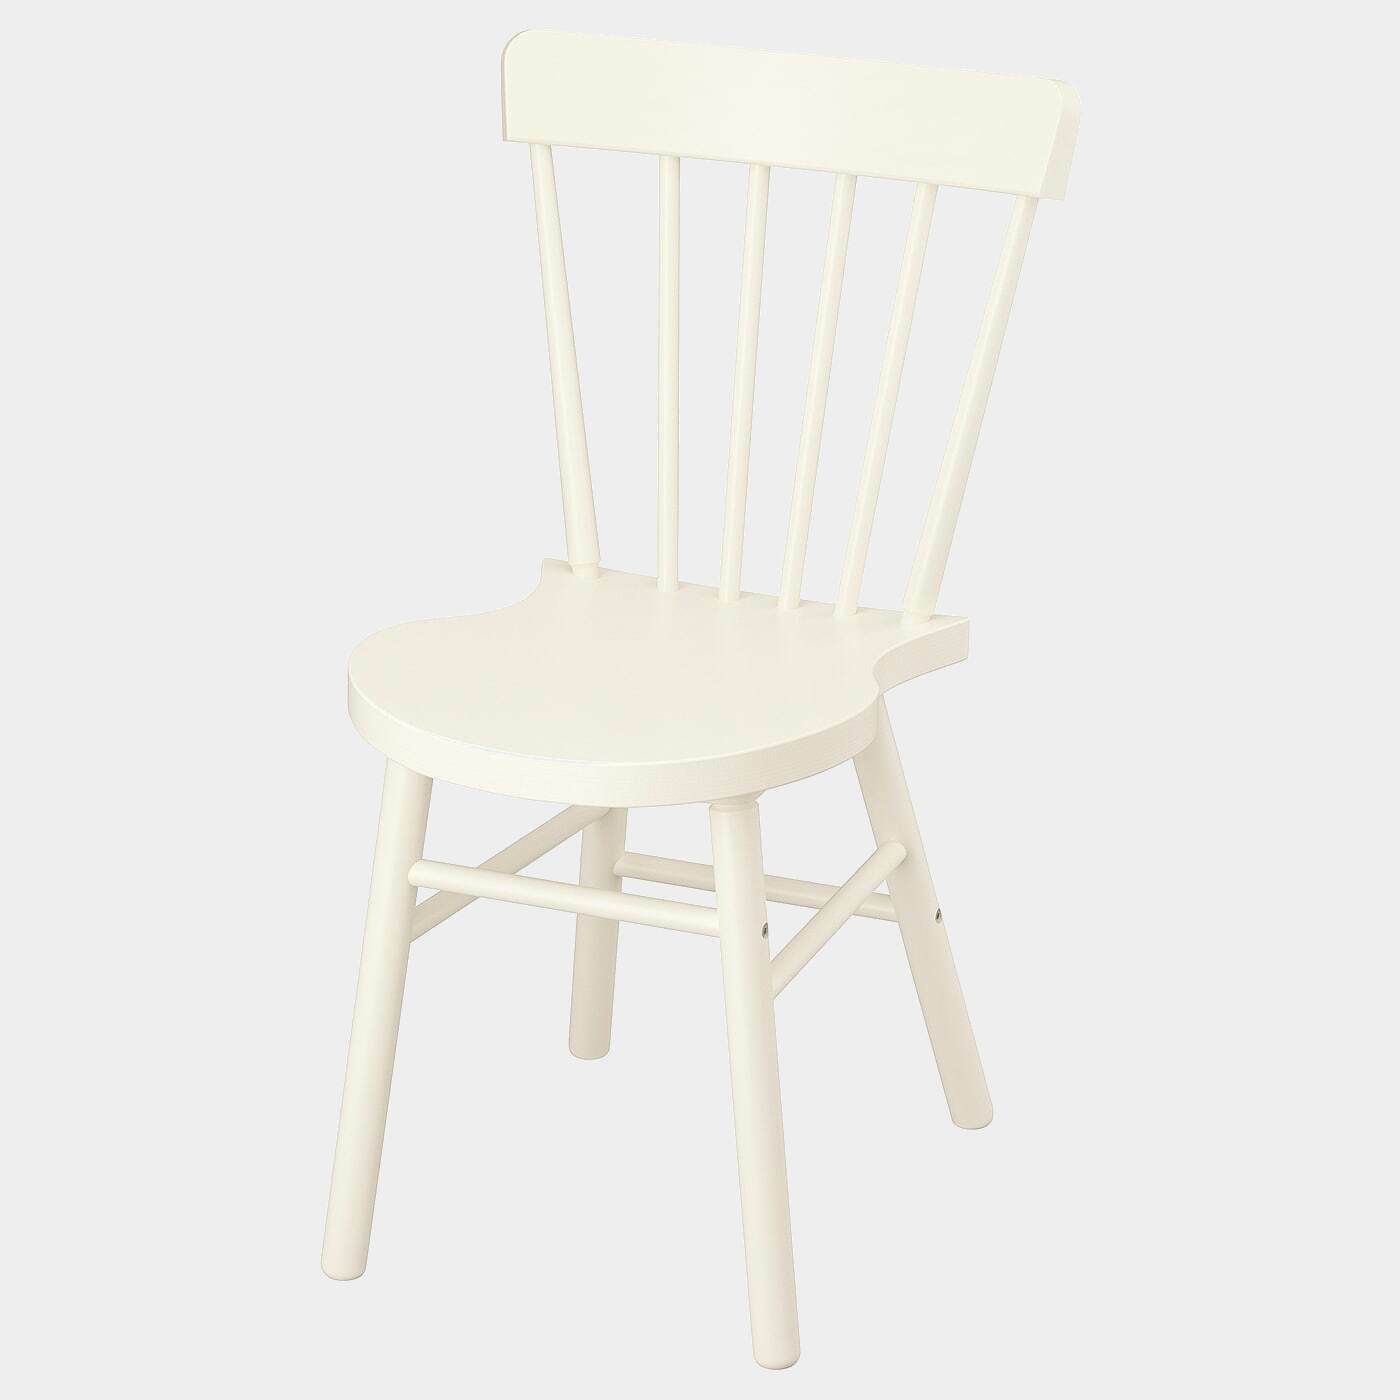 NORRARYD Stuhl  - Esszimmerstühle - Möbel Ideen für dein Zuhause von Home Trends. Möbel Trends von Social Media Influencer für dein Skandi Zuhause.